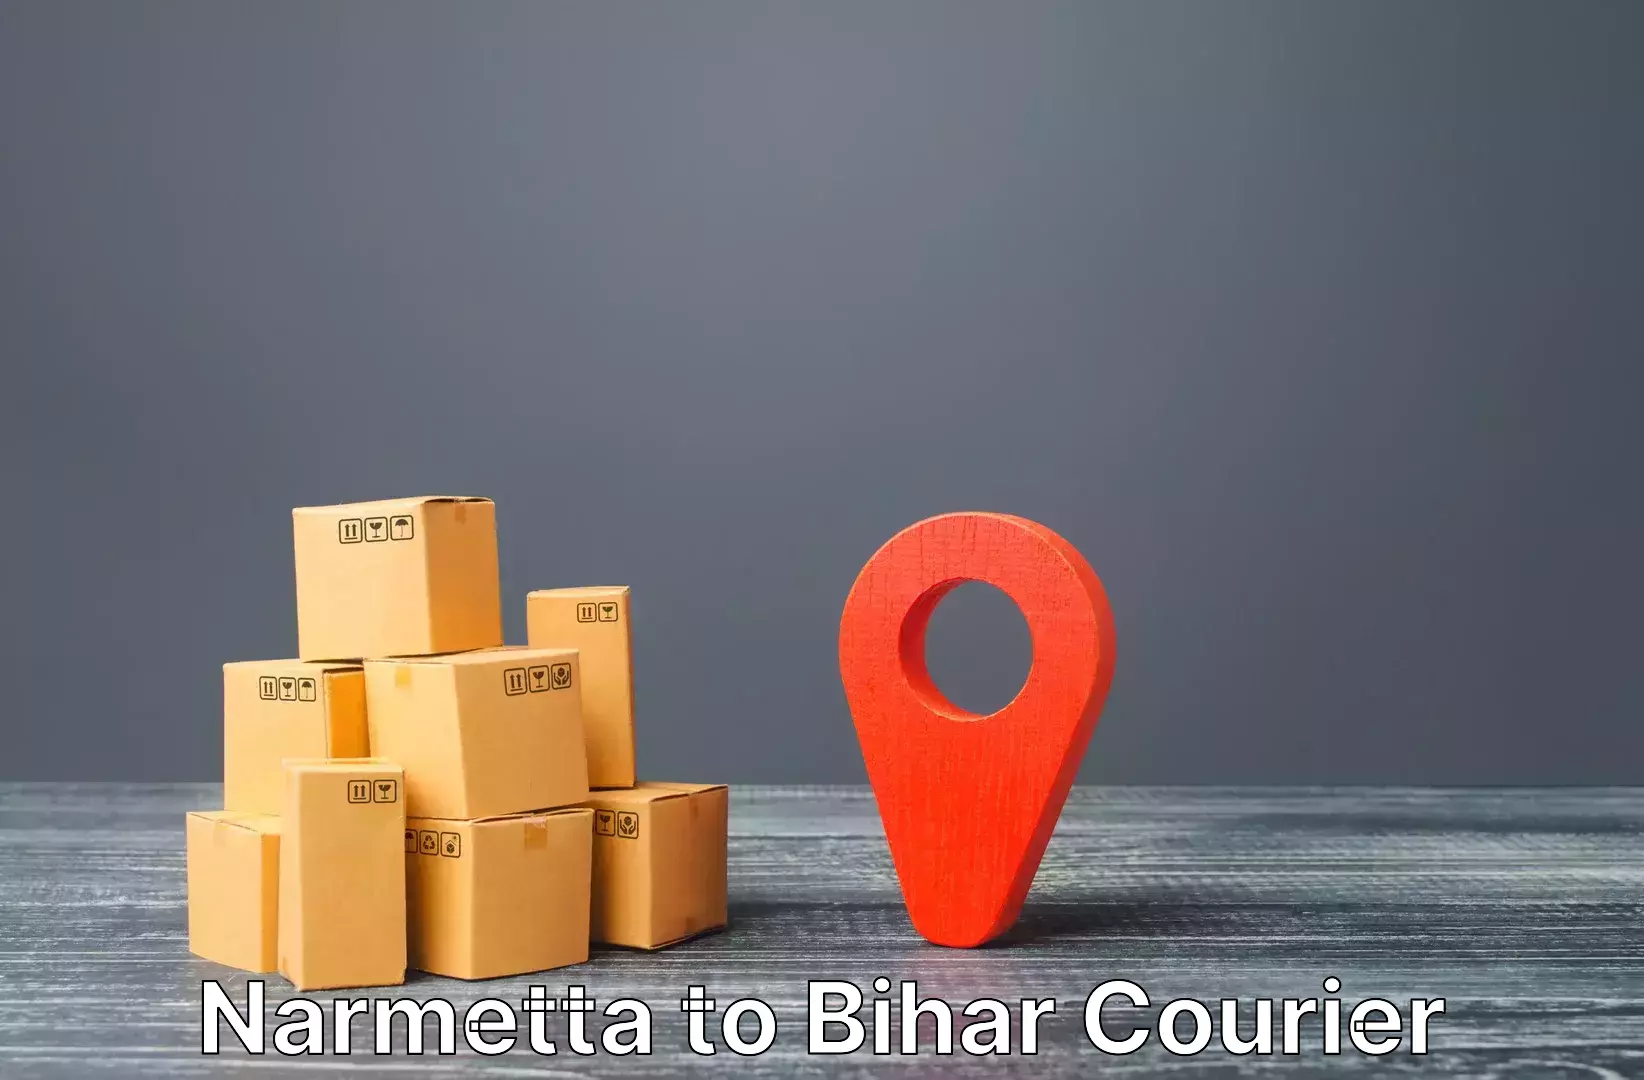 Customized luggage delivery Narmetta to Bikramganj